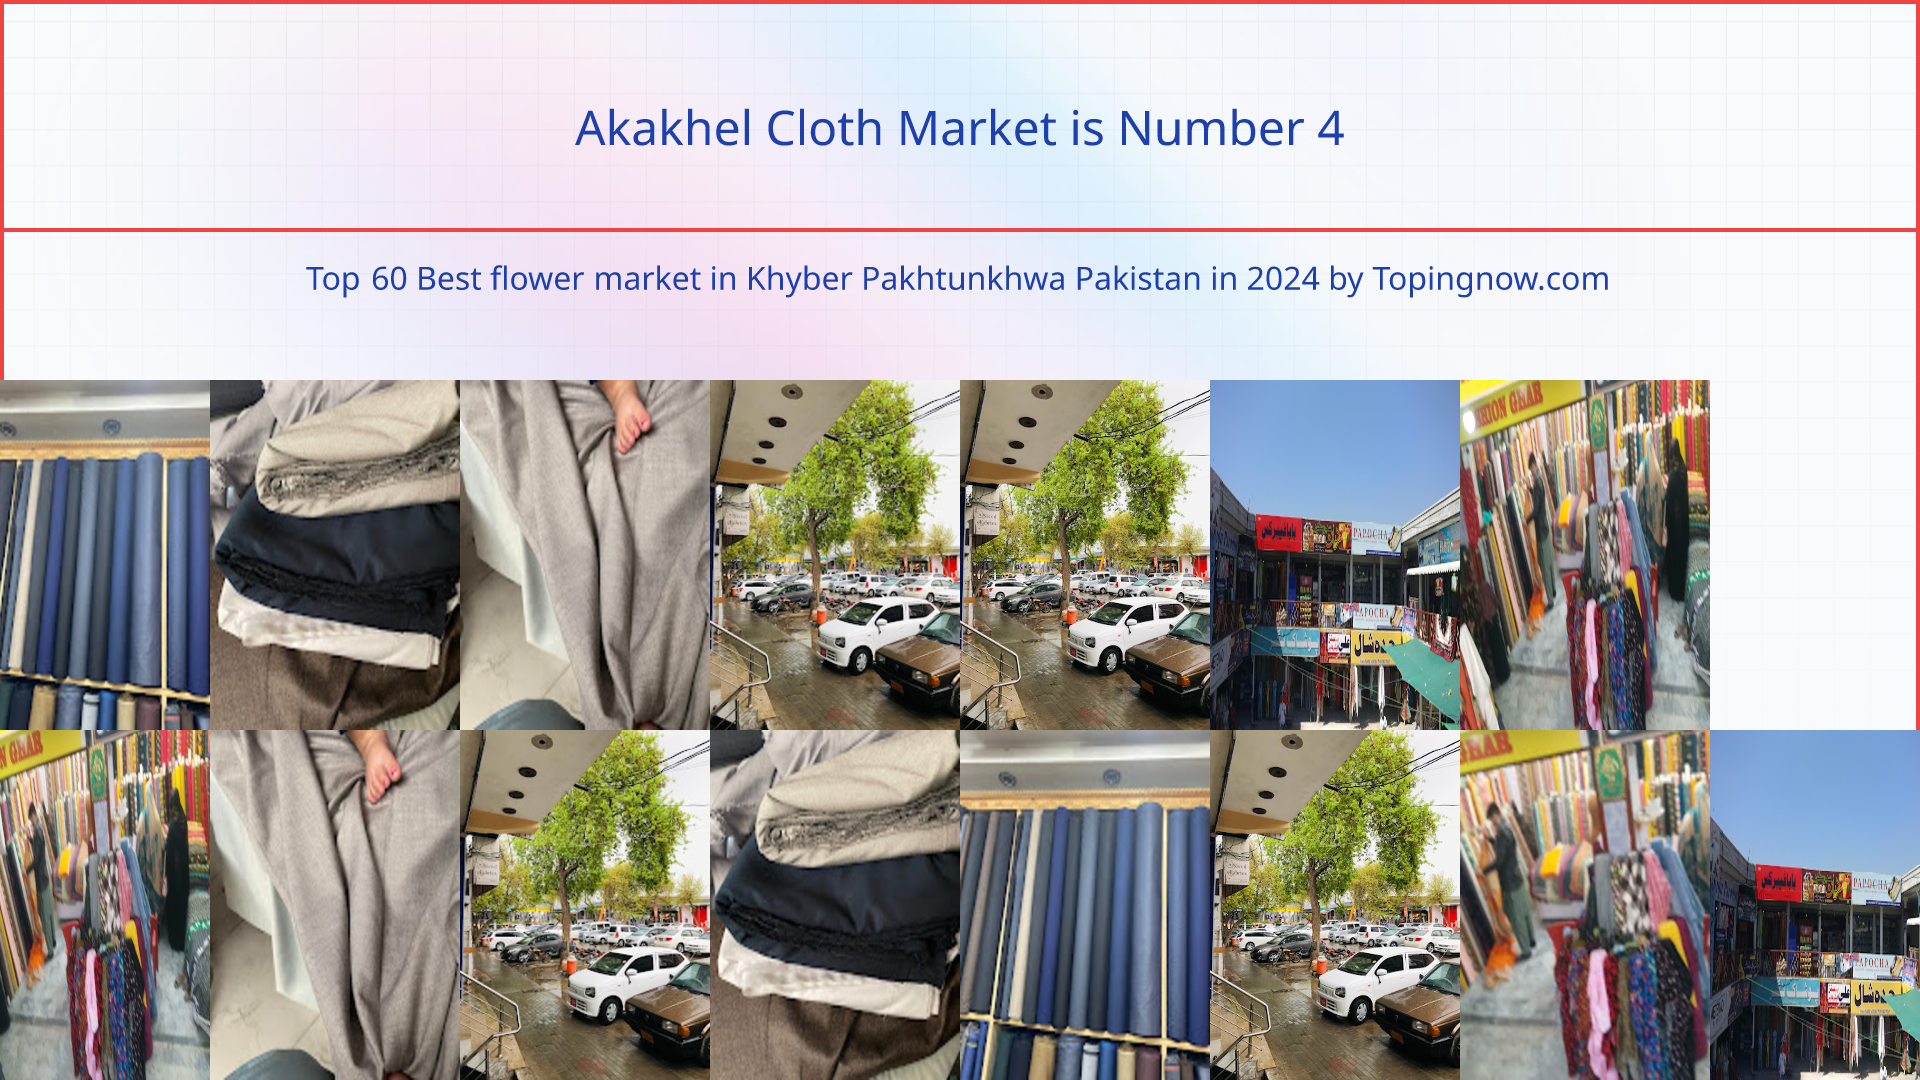 Akakhel Cloth Market: Top 60 Best flower market in Khyber Pakhtunkhwa Pakistan in 2024